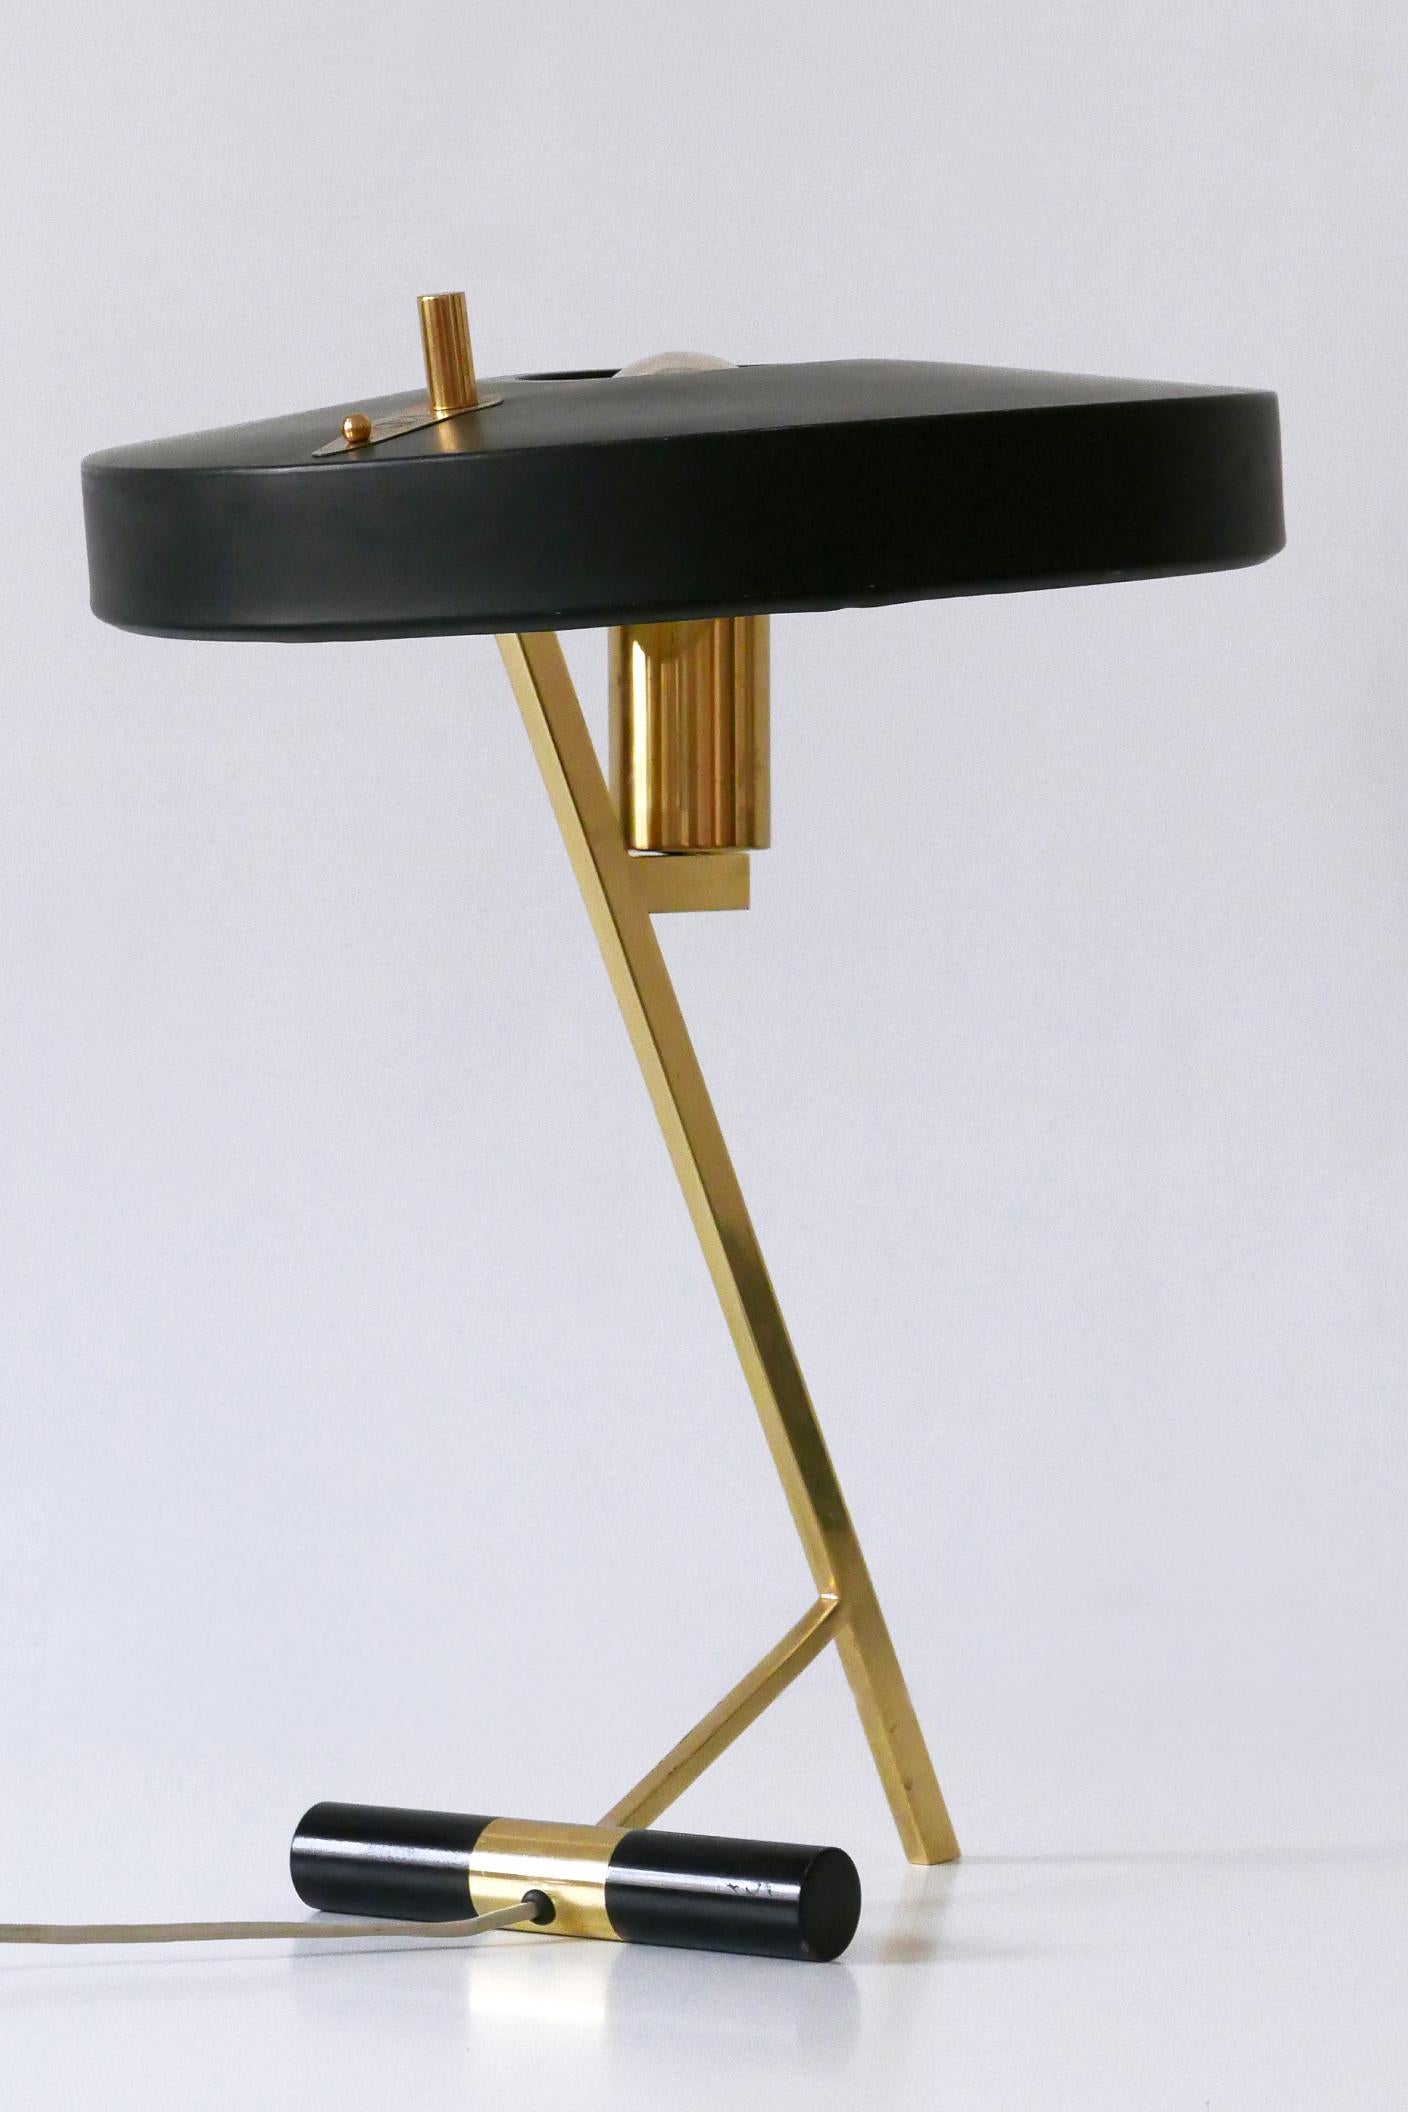 Elegante Mid-Century Modern Z Tischleuchte oder Schreibtischleuchte. Entworfen von Louis Kalff für Philips, Niederlande, 1950er Jahre.

Die aus Messing und Aluminium gefertigte Tischleuchte wird mit 1 x E27 / E26 Edison-Schraubfassung geliefert, ist